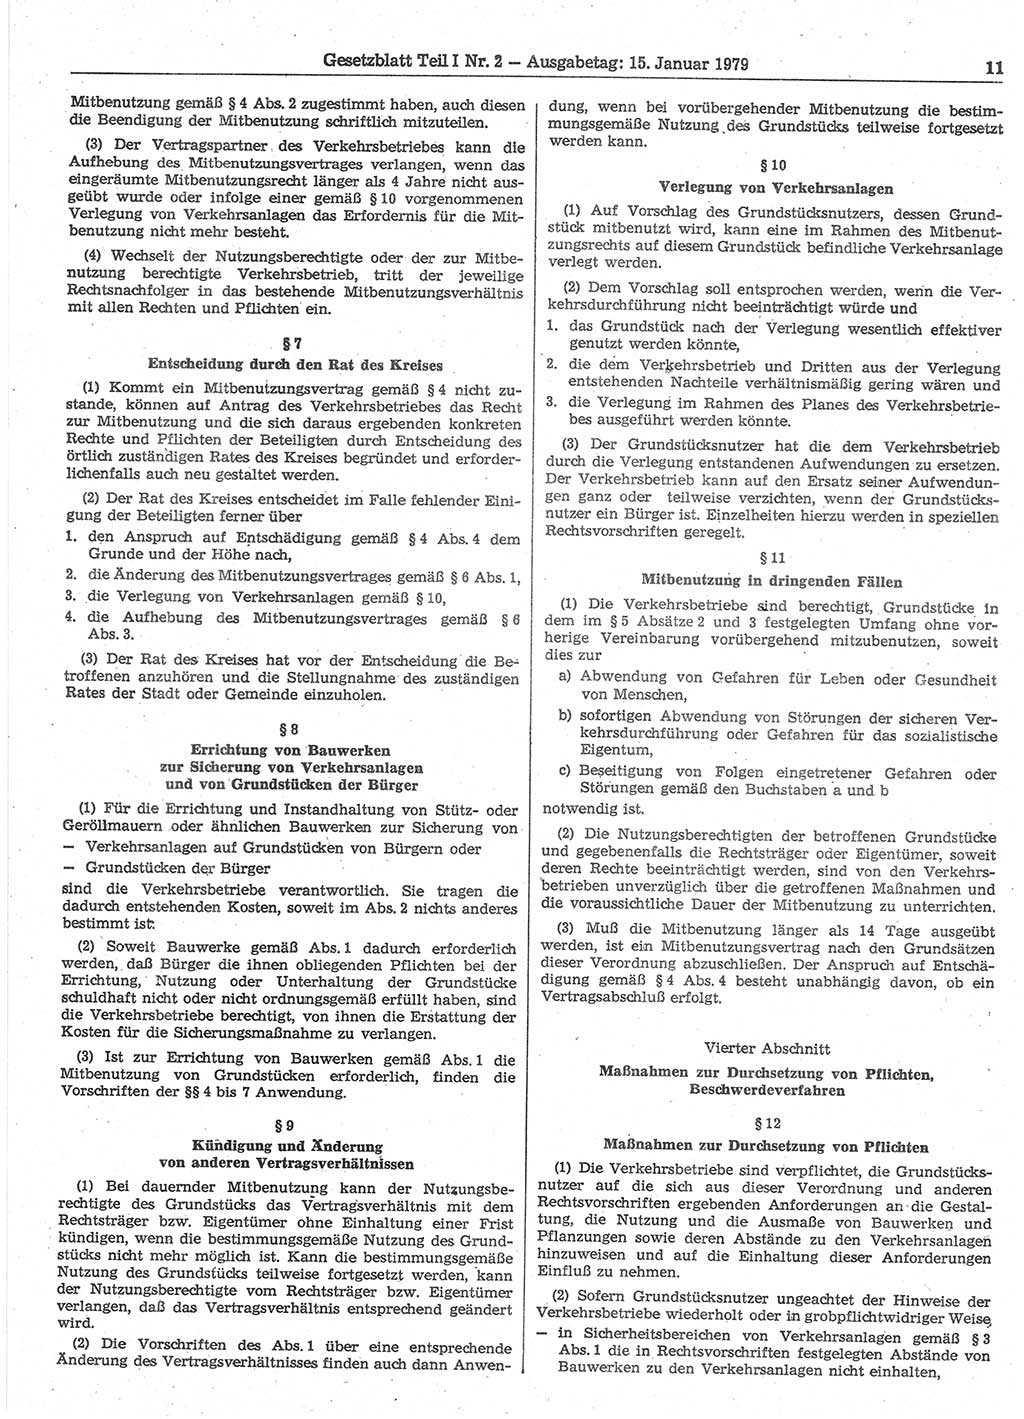 Gesetzblatt (GBl.) der Deutschen Demokratischen Republik (DDR) Teil Ⅰ 1979, Seite 11 (GBl. DDR Ⅰ 1979, S. 11)